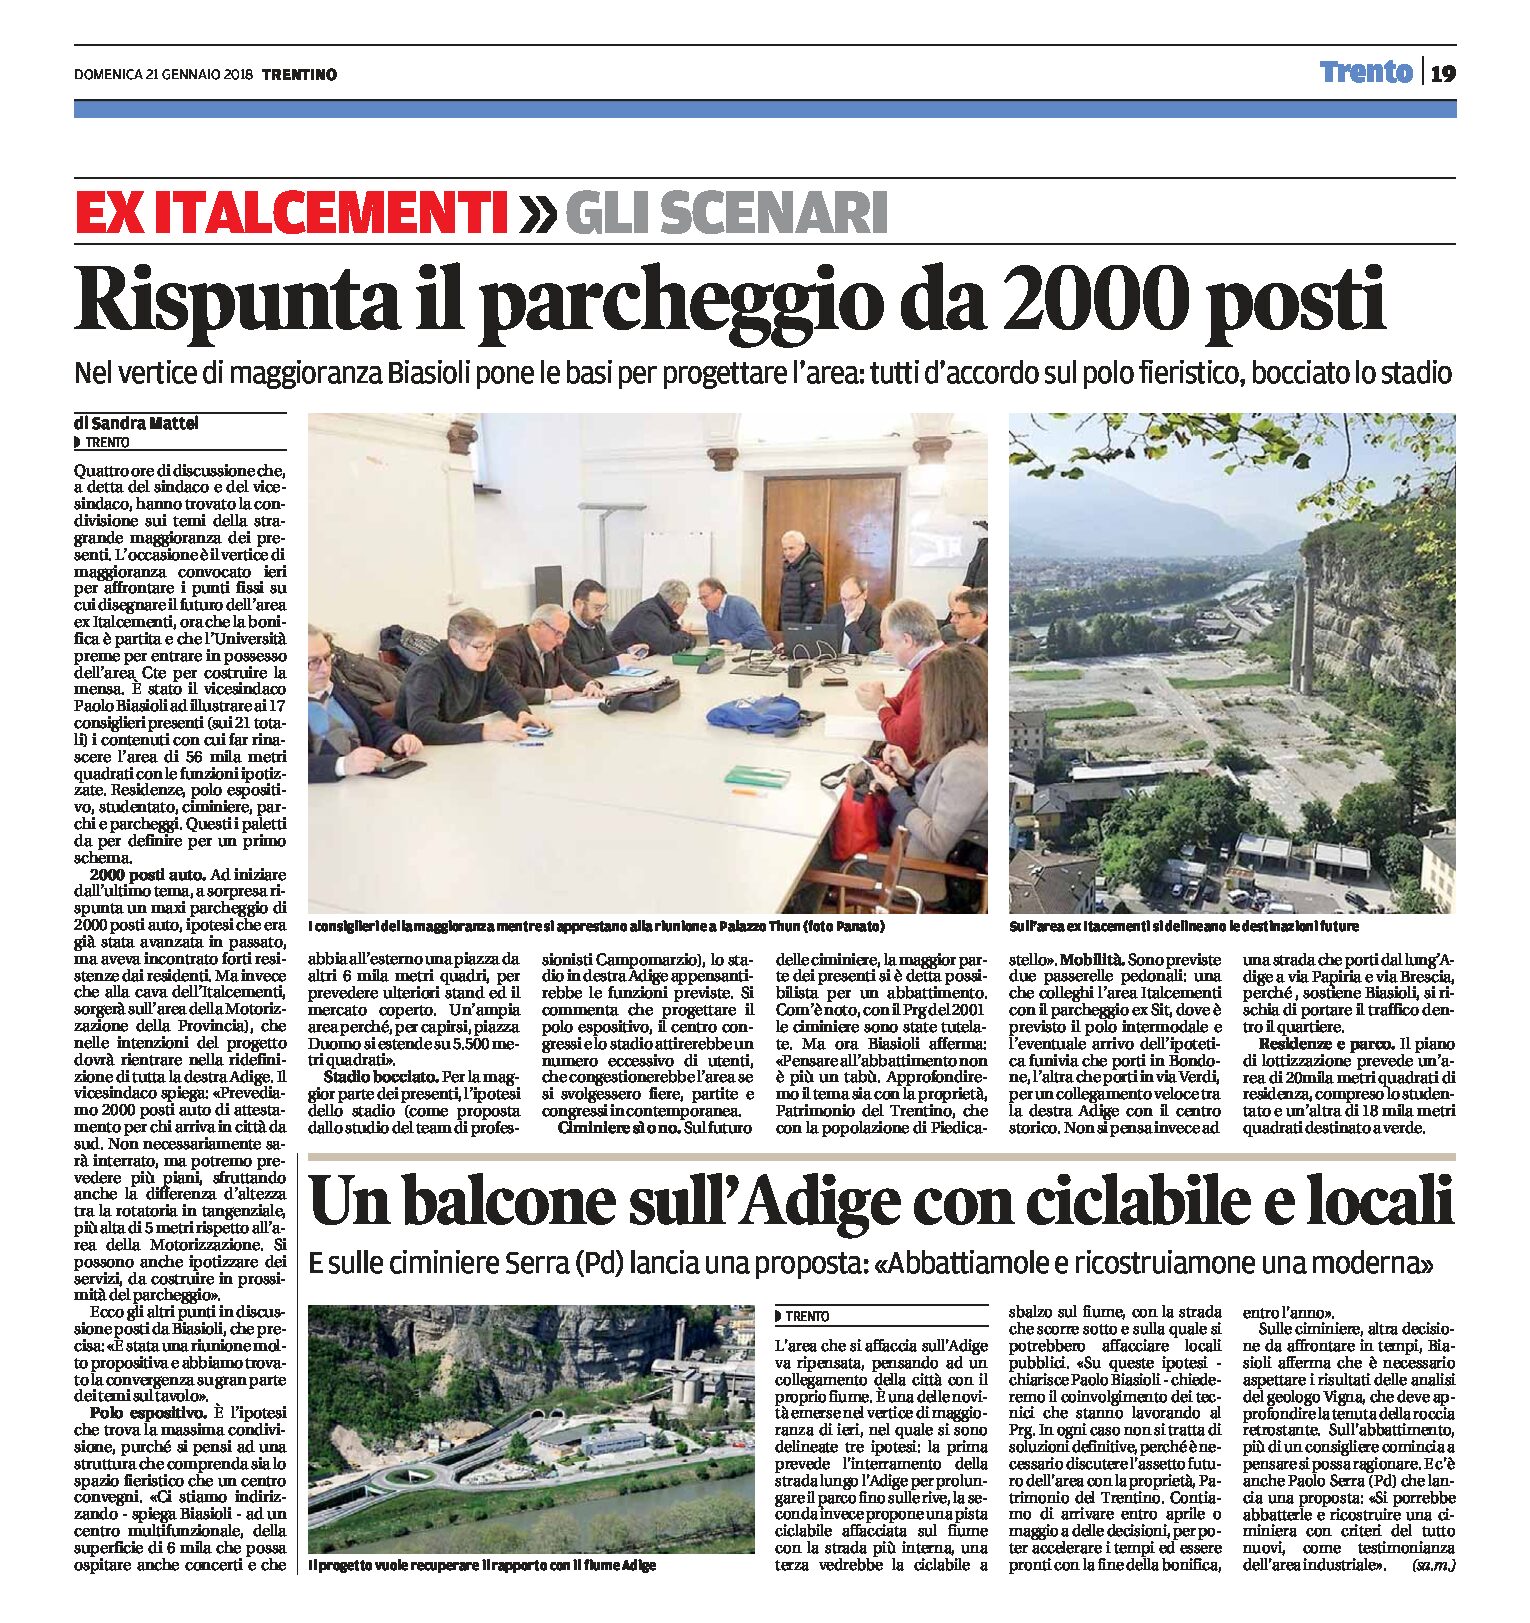 Piedicastello, ex Italcementi: polo fieristico, parcheggio da 2000 posti e balcone sull’Adige